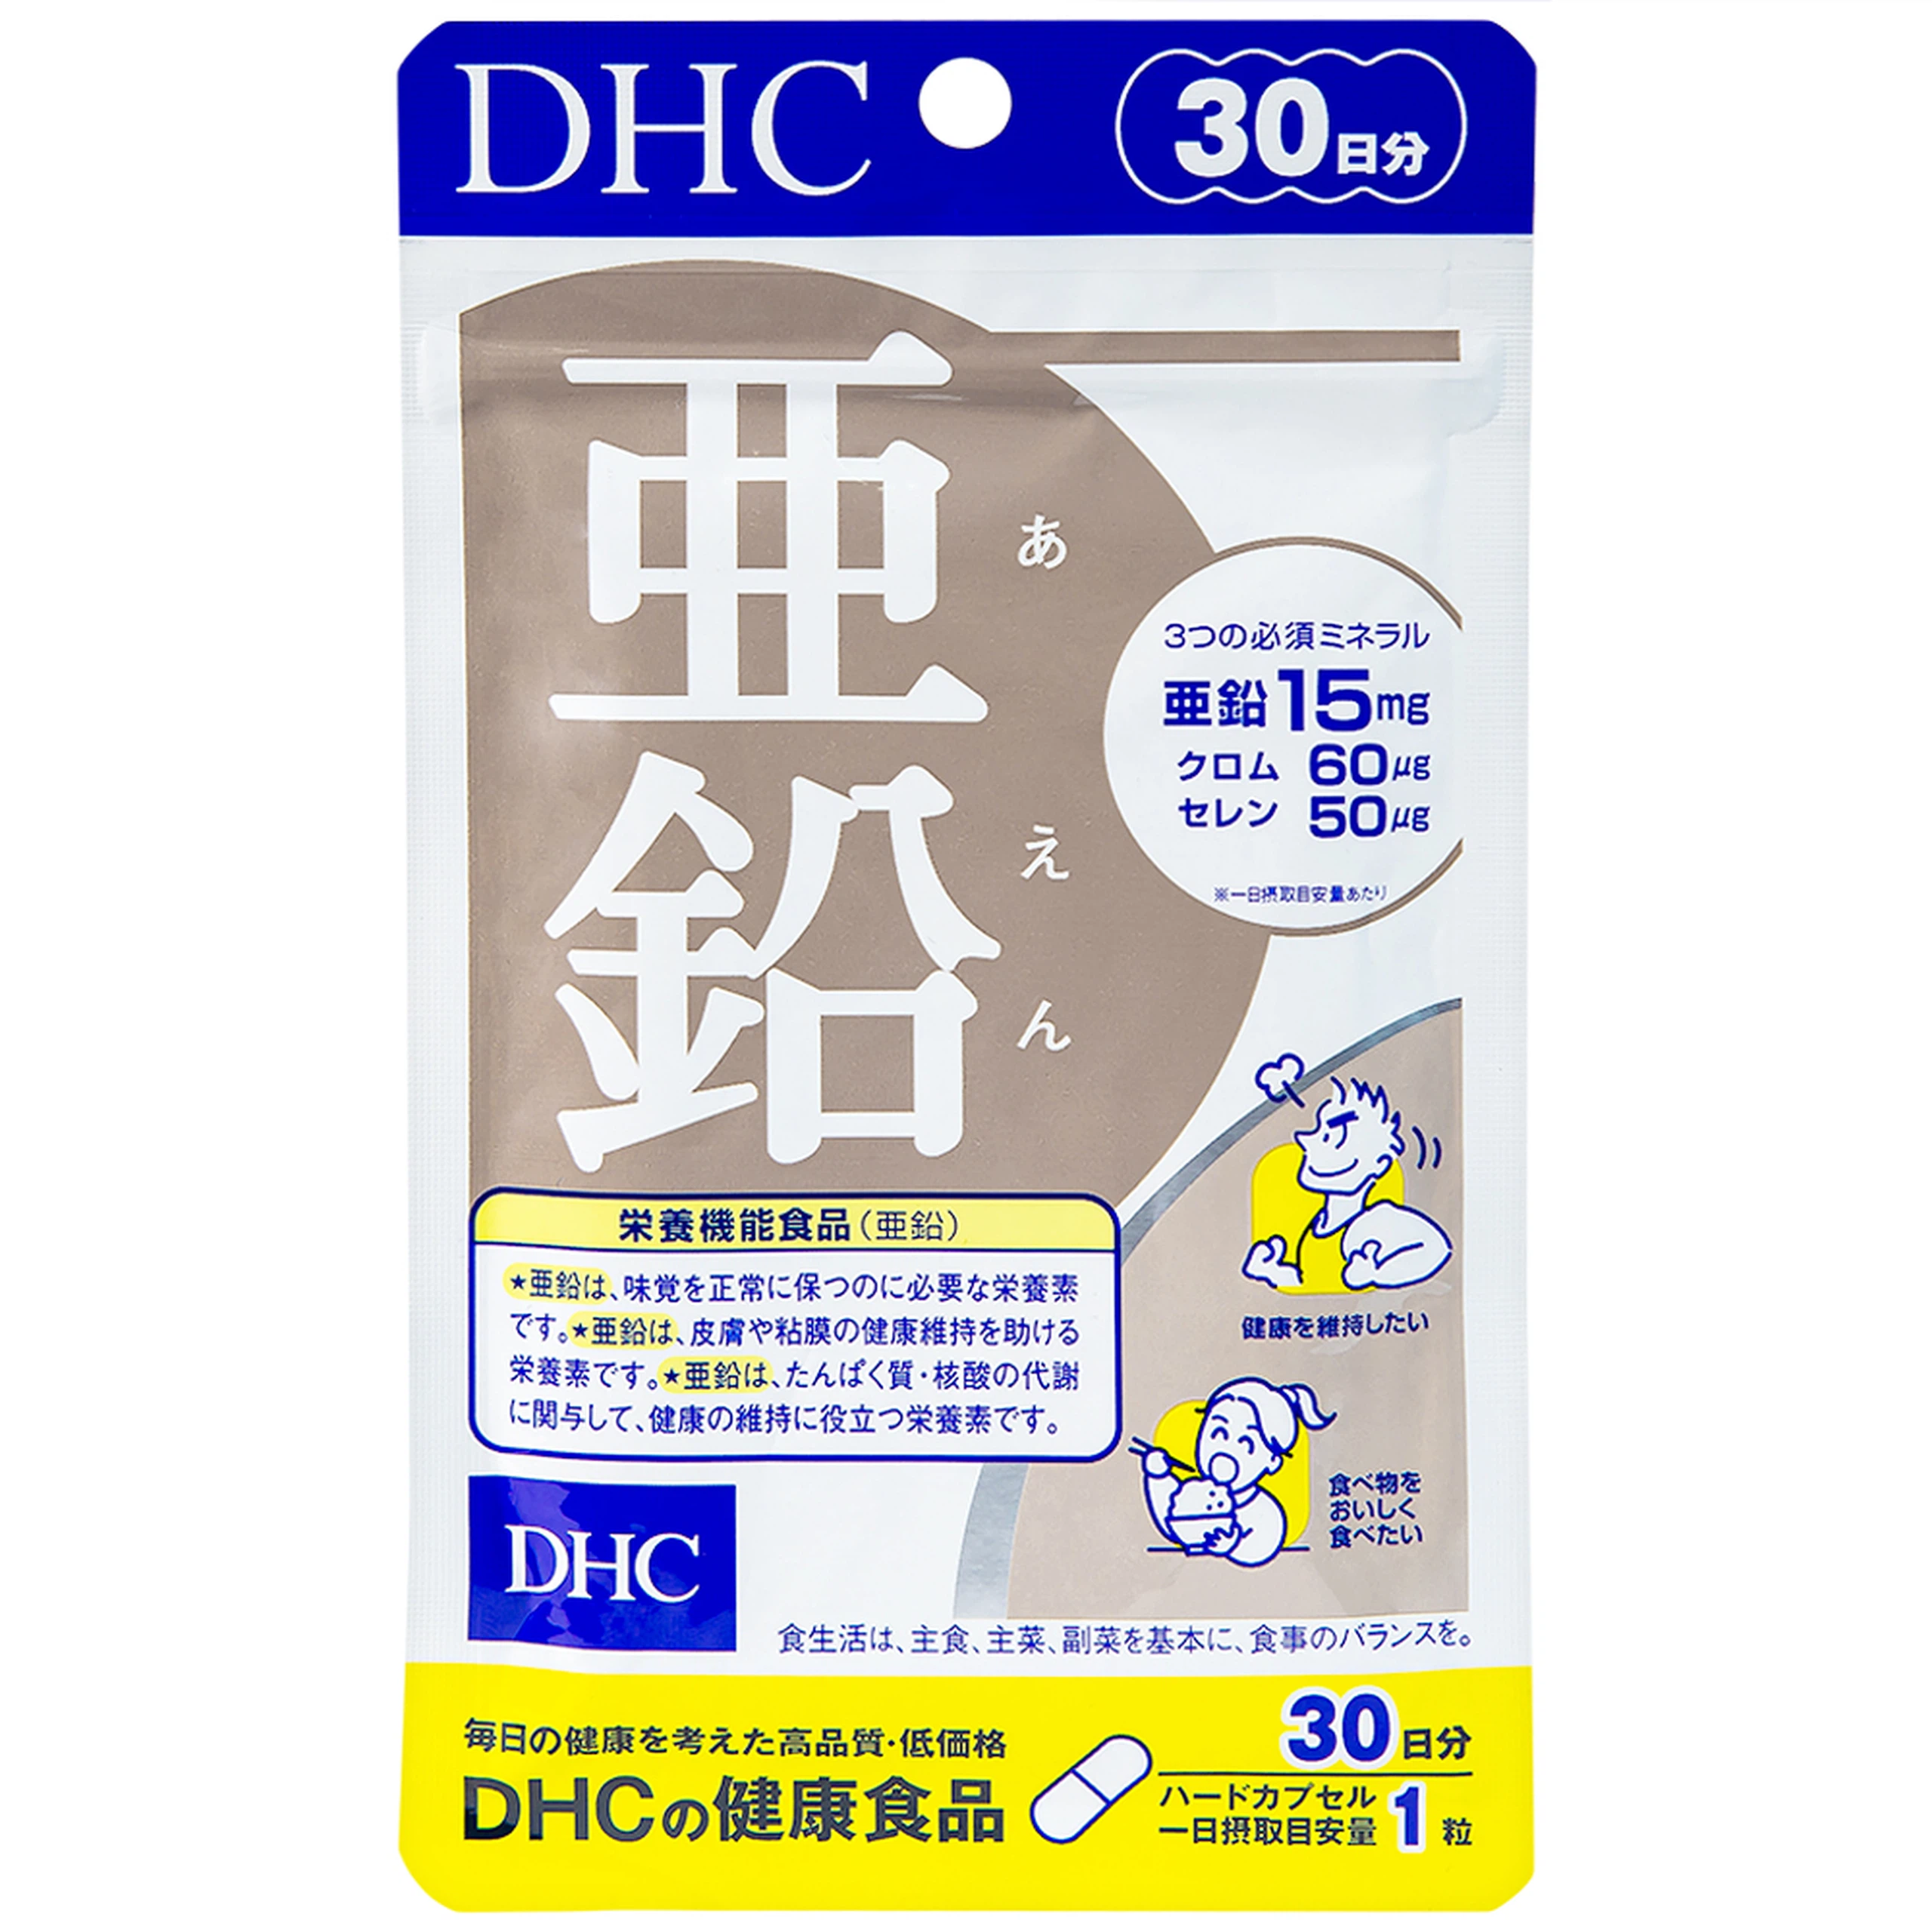 Viên uống DHC Zinc bổ sung kẽm cho cơ thể, hỗ trợ duy trì sức khỏe (30 viên)